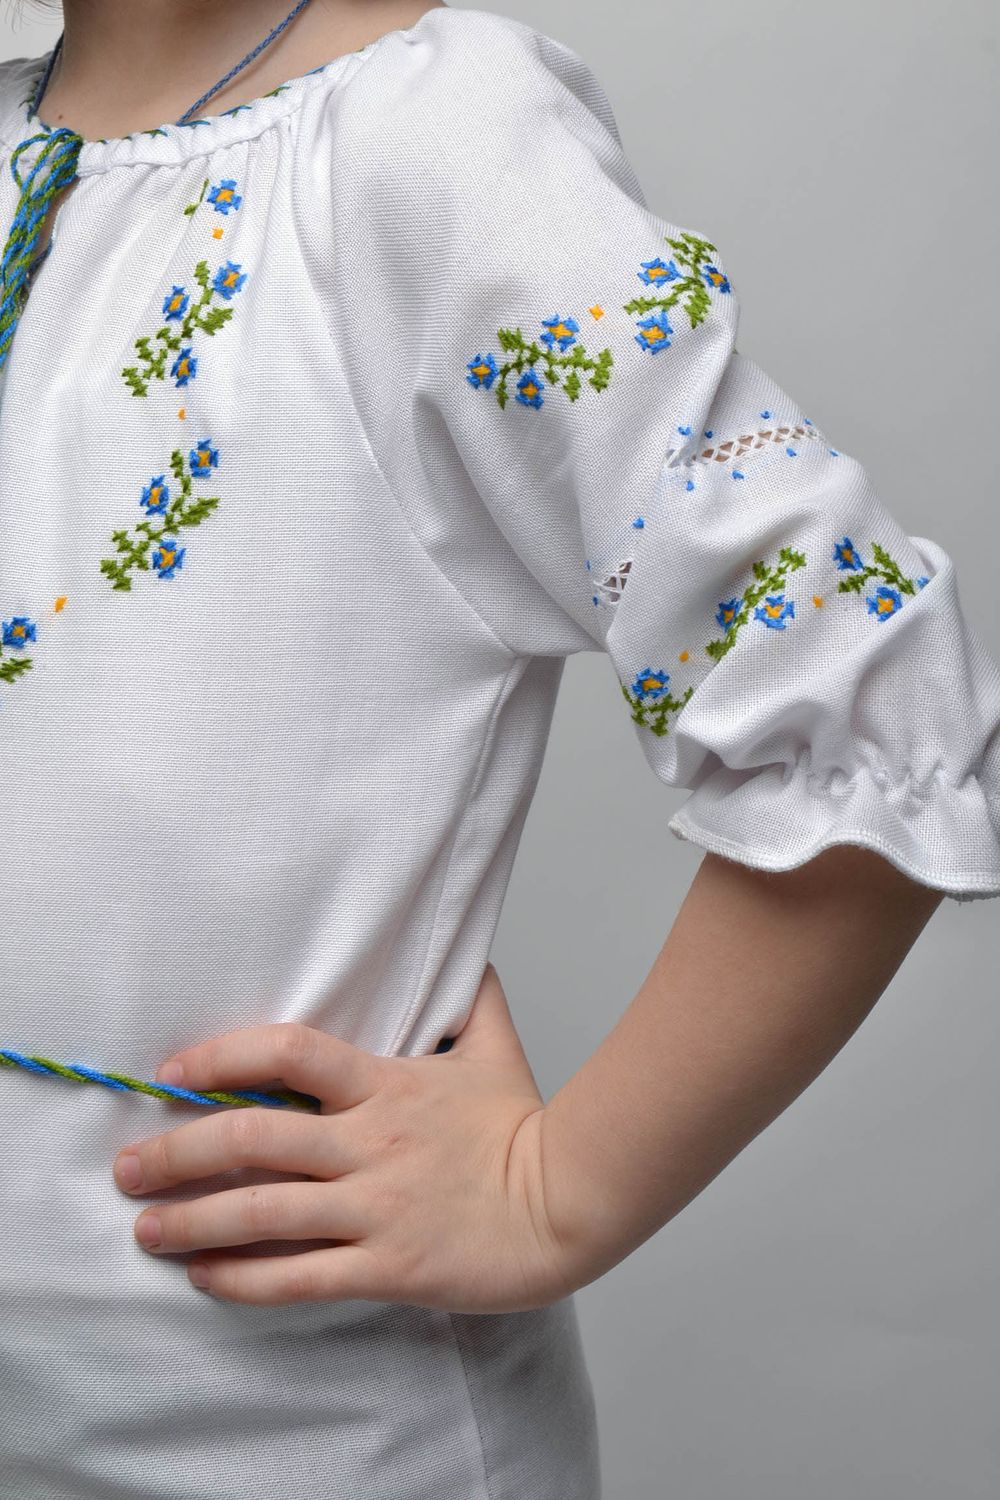 Camisa étnica bordada para niña de 5-7 años de edad foto 2